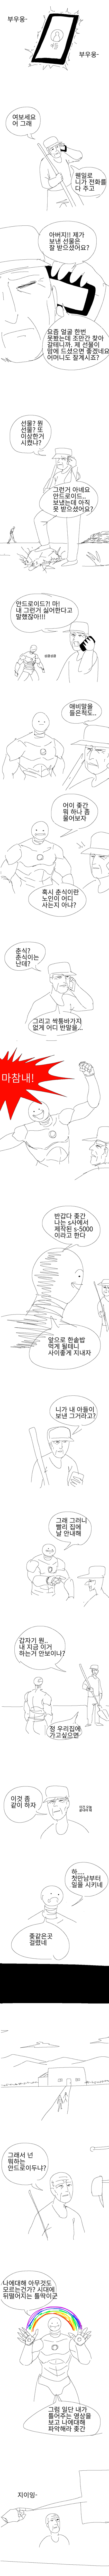 김치찌개를 잘하는 든든한 안드로이드 만화.jpg